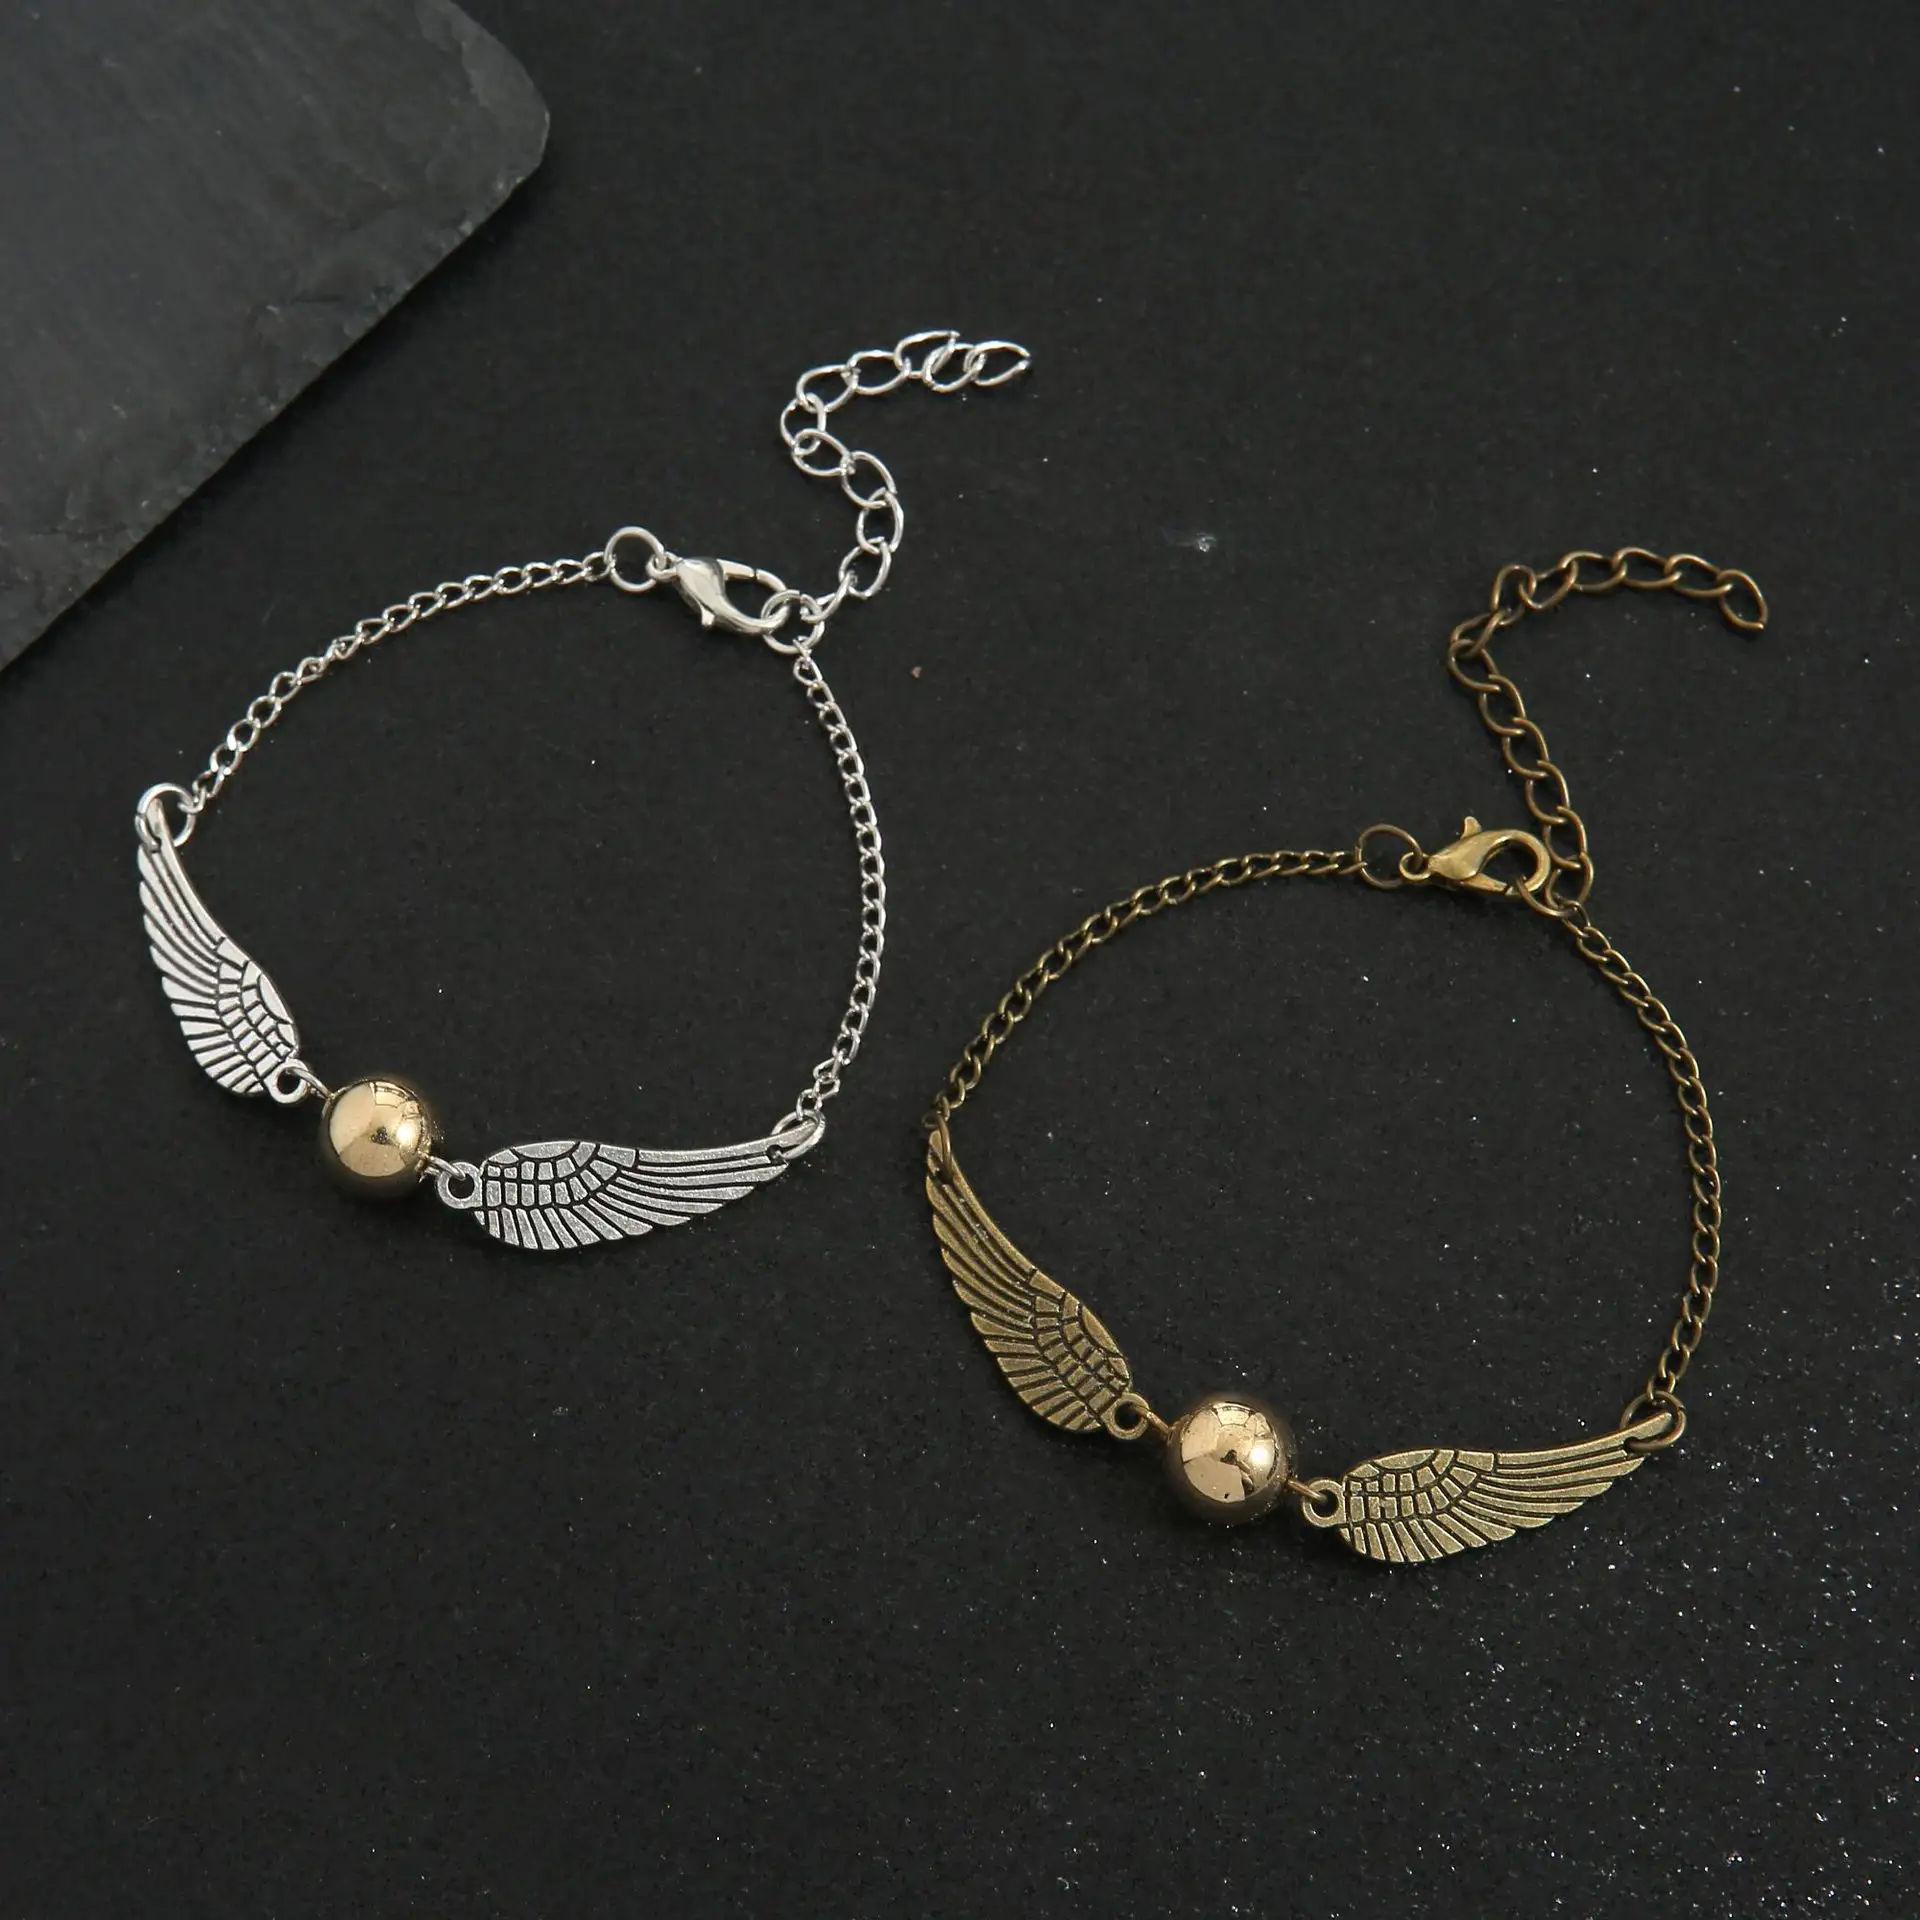 Braccialetto boccino braccialetto di fascino di personalità braccialetti di ali d'angelo in acciaio inossidabile gioielli per regali da donna e uomo